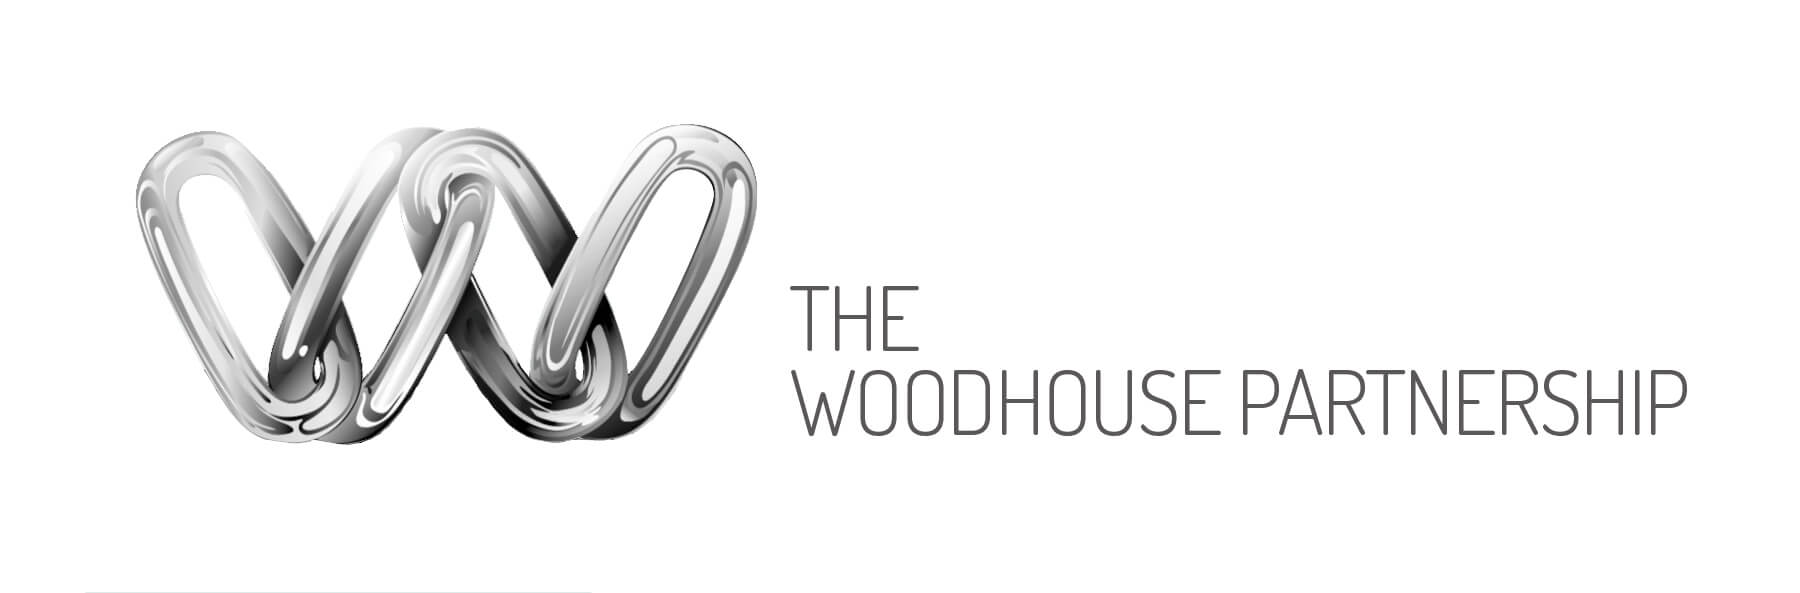 The Woodhouse Partnership logo